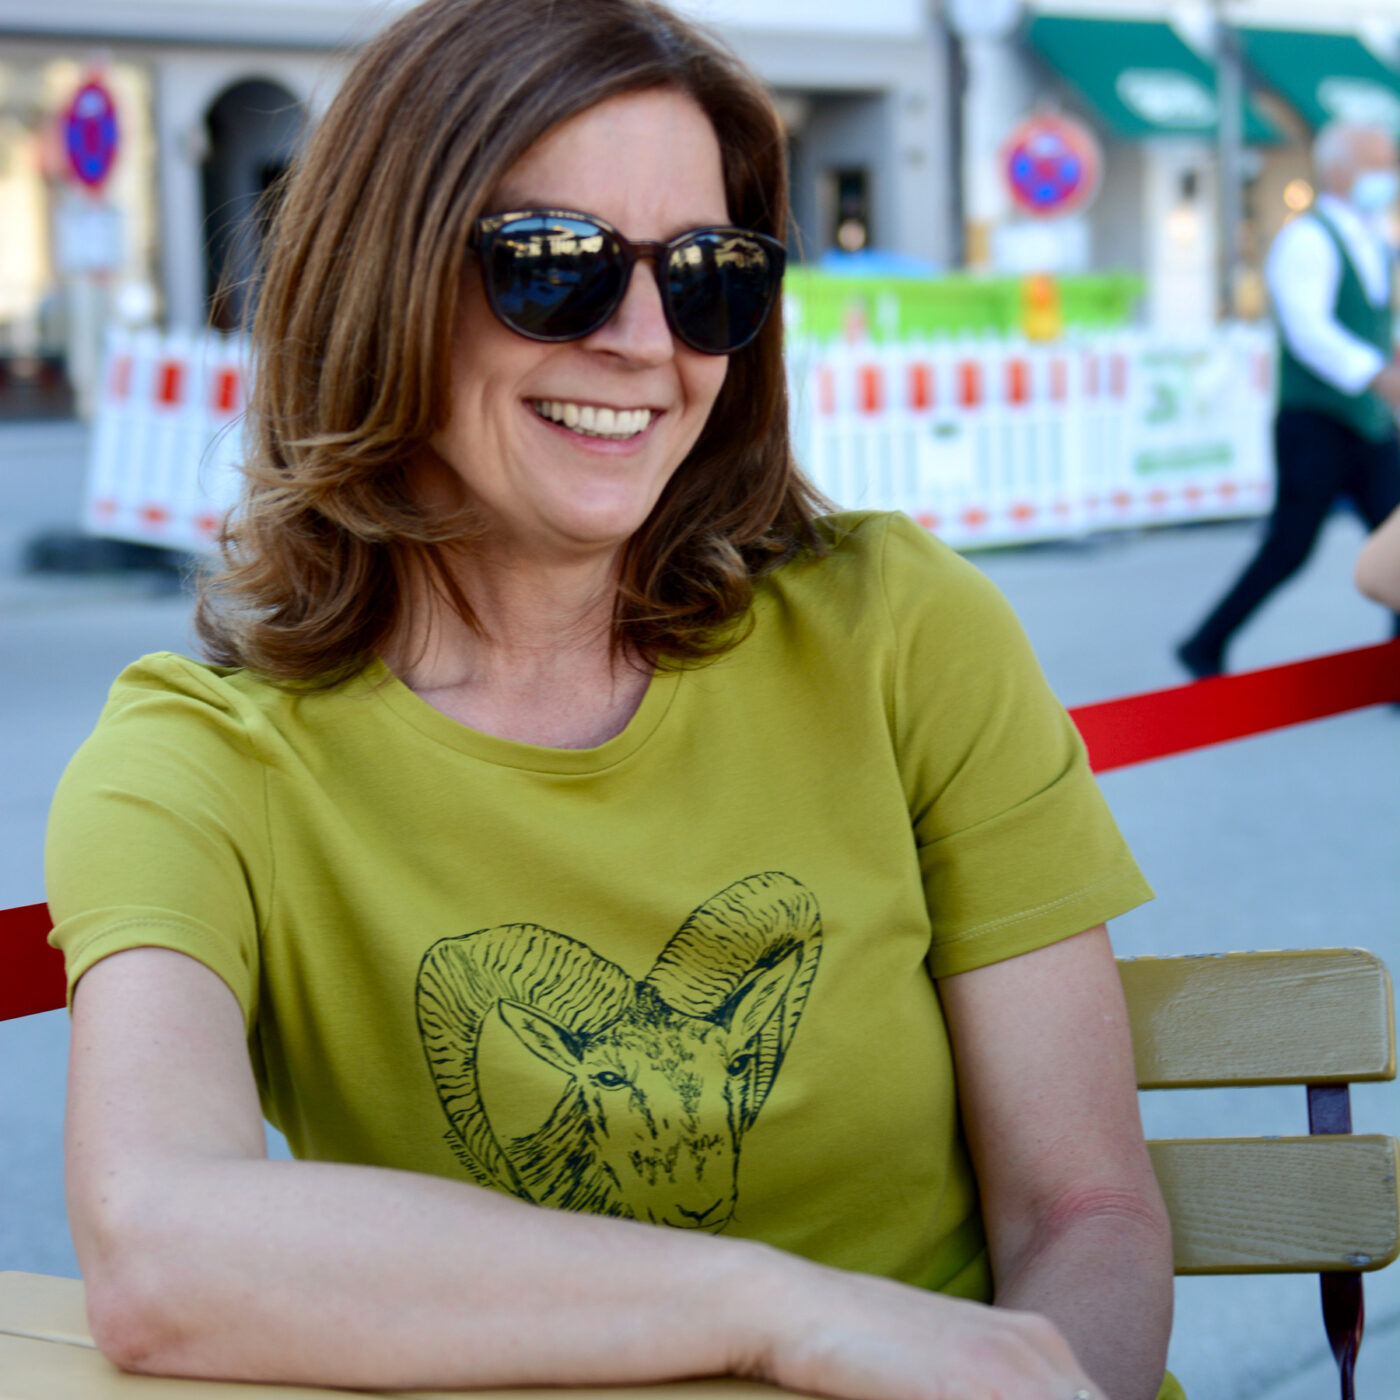 Frau vor städtischem Hintergrund, sie trägt ein grünes T-Shirt mit Siebdruckmotiv Mufflonkopf.